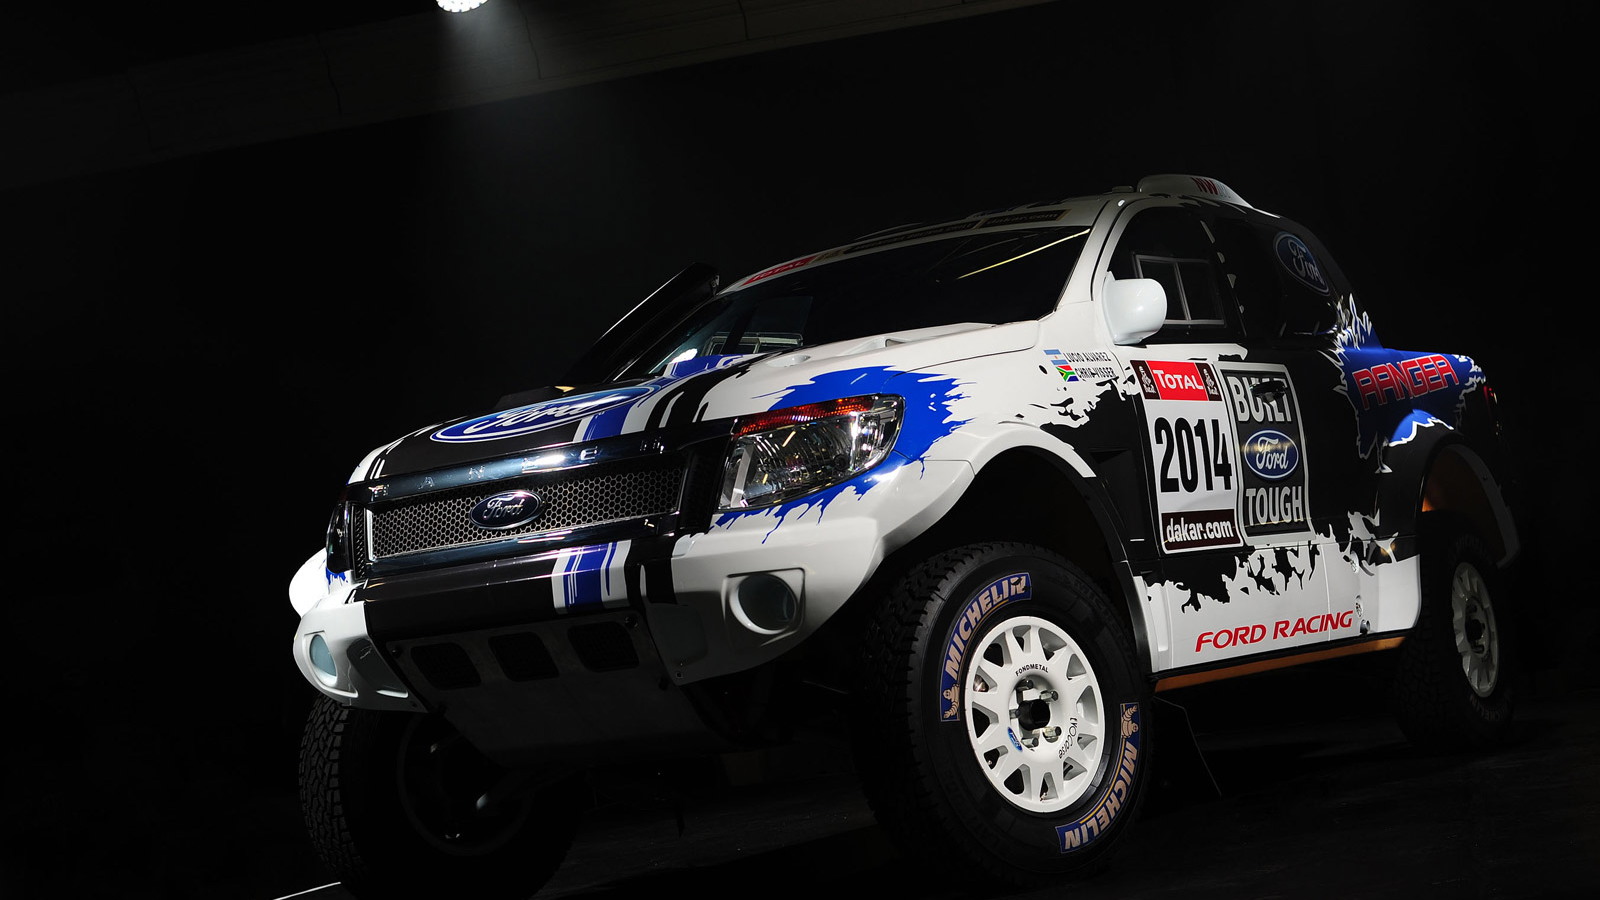 Custom Ford Ranger to be entered in 2014 Dakar Rally